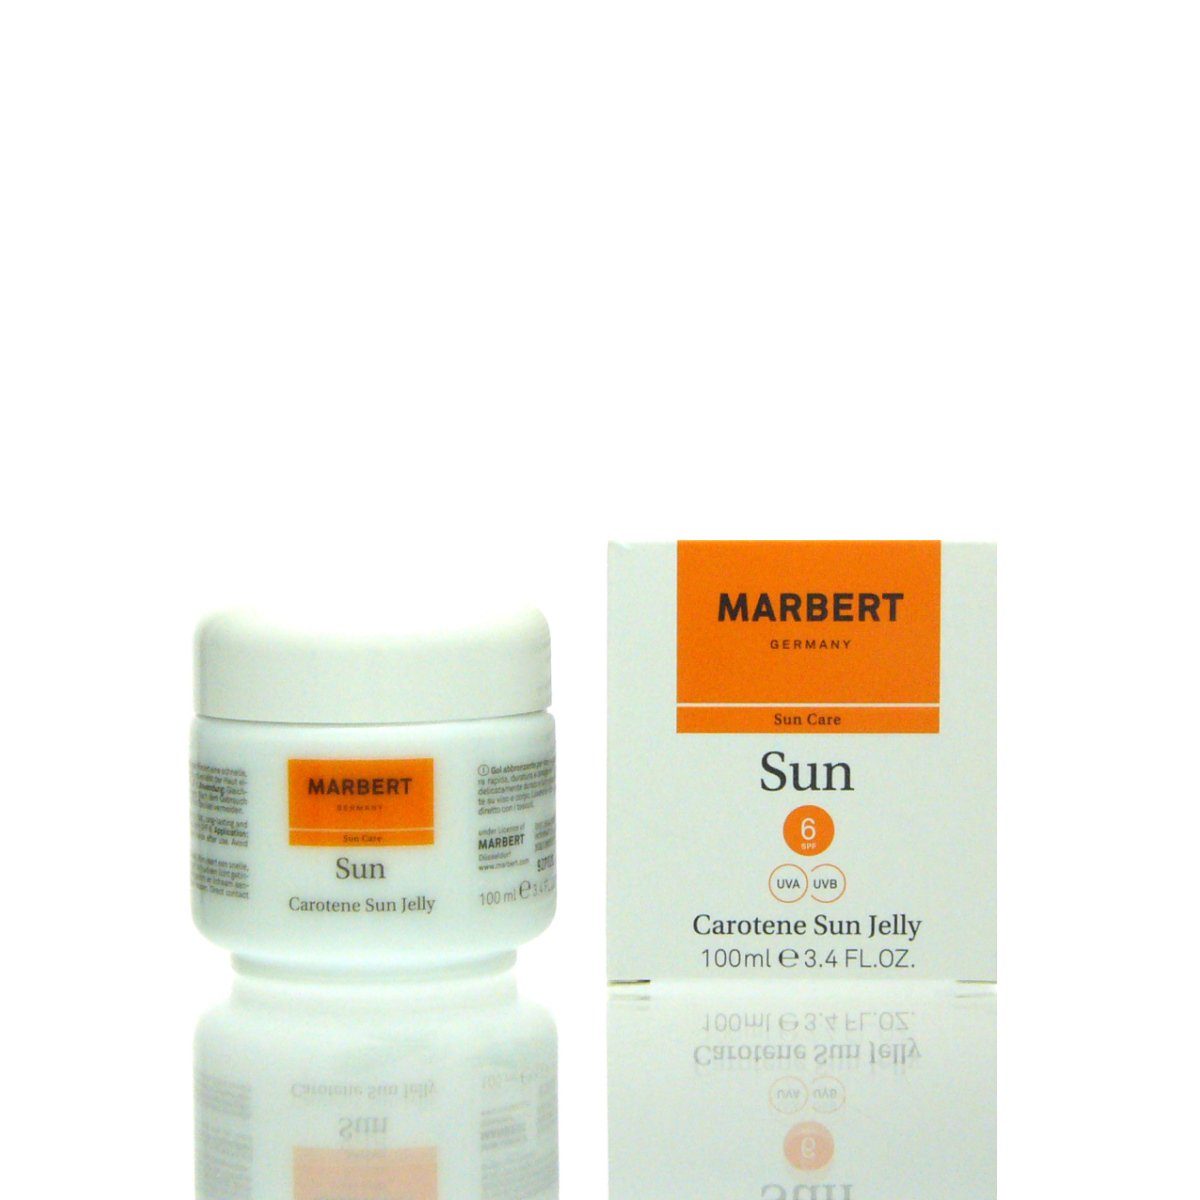 Marbert Make-up 100 Carotene Jelly ml Sun Marbert Sun 6 SPF